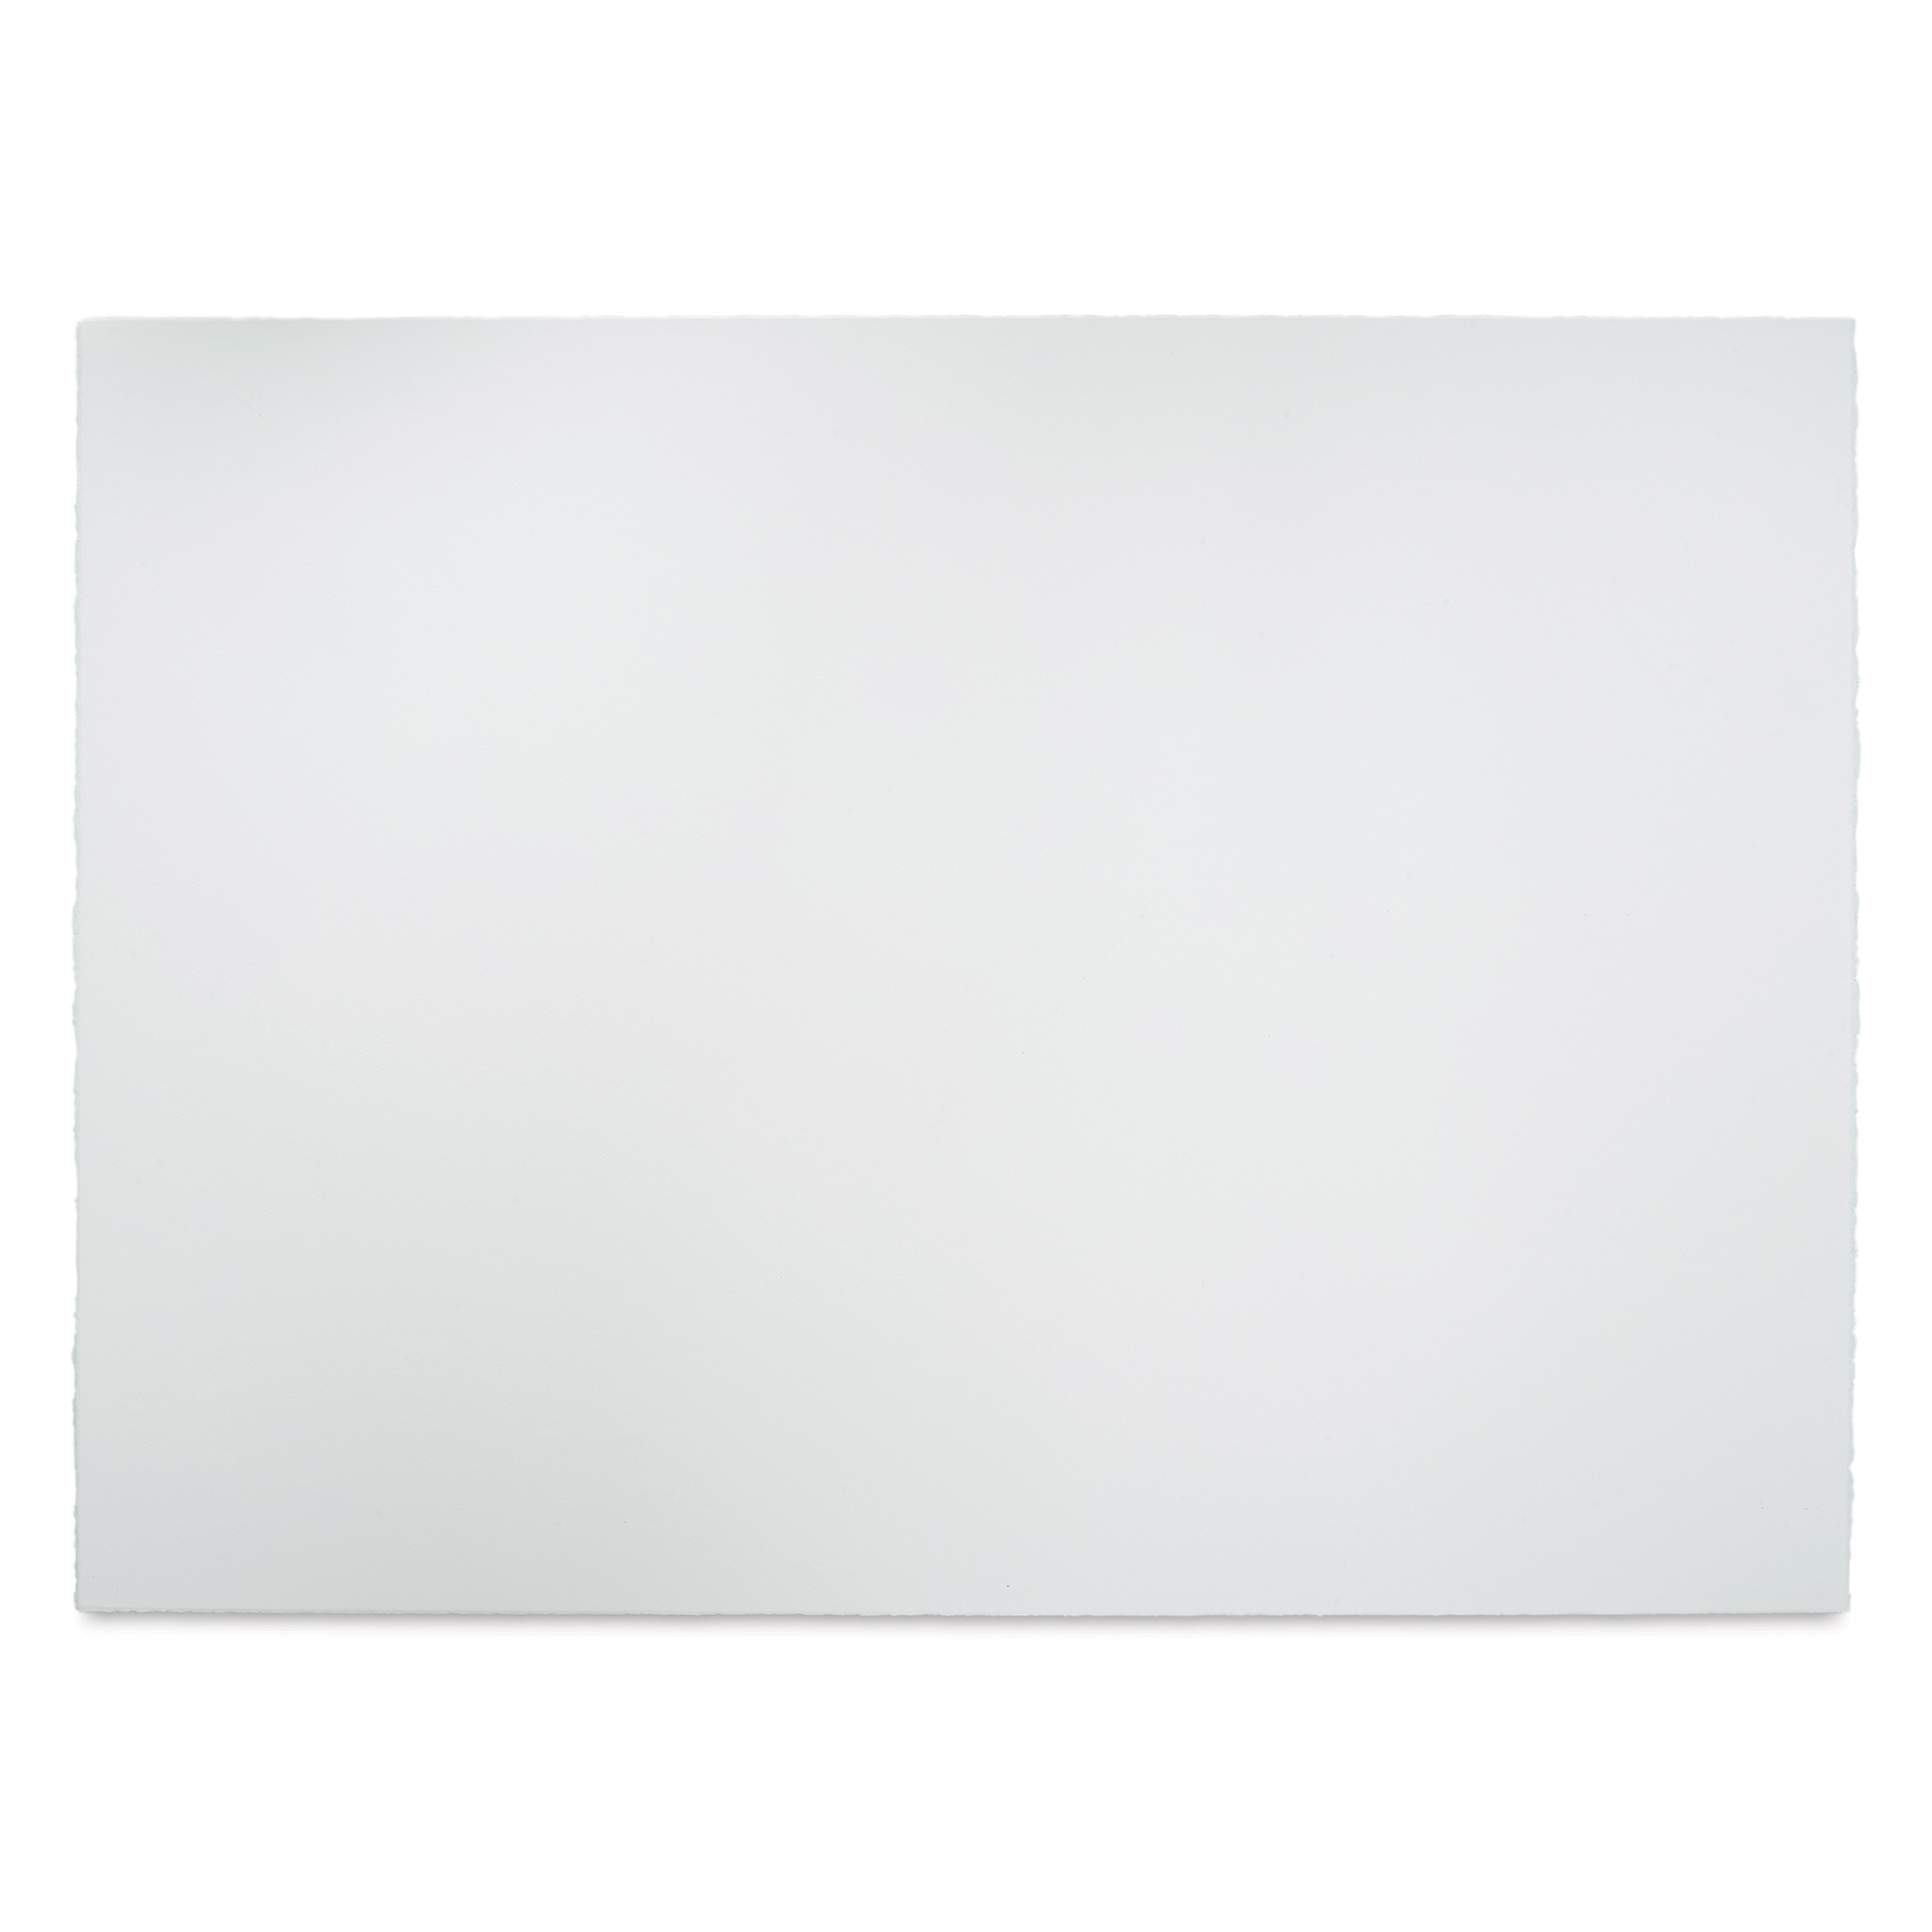 Fabriano Artistico Extra White Paper Sheet, 22 x 30, 300 lb./640 gsm, Hot  Press